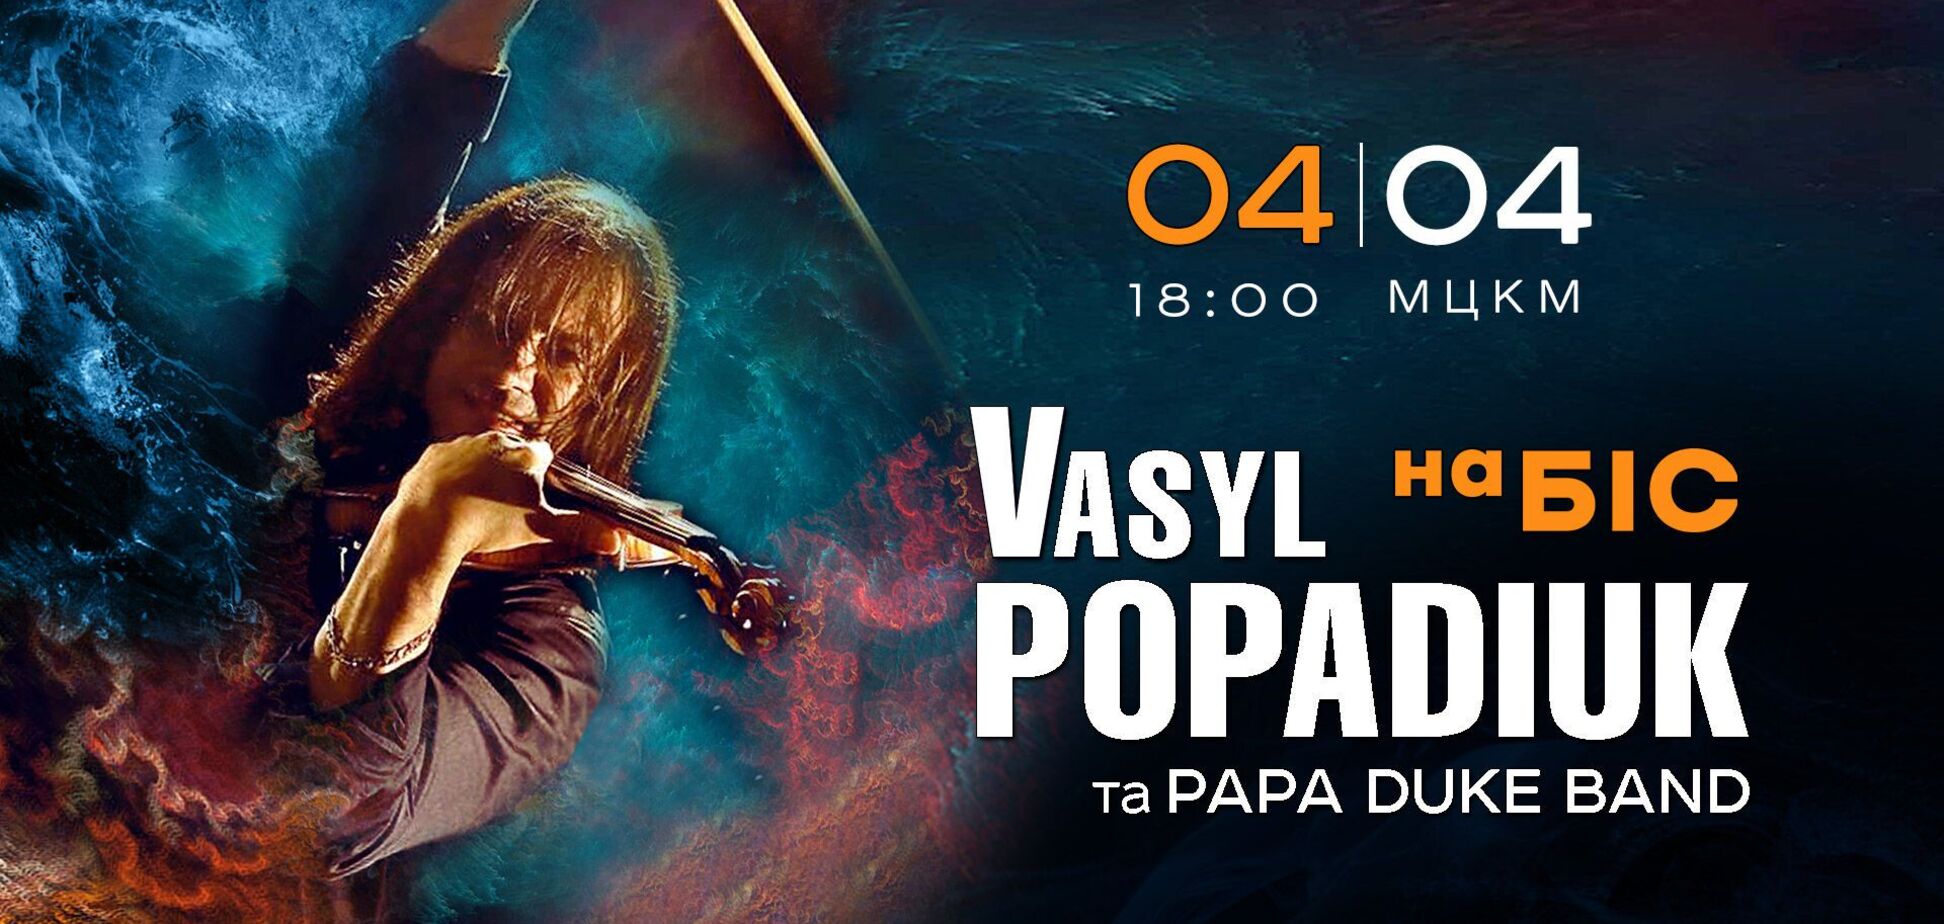 'Украинский Паганини' Василий Попадюк в рамках благотворительного тура сыграет концерт на бис в Киеве